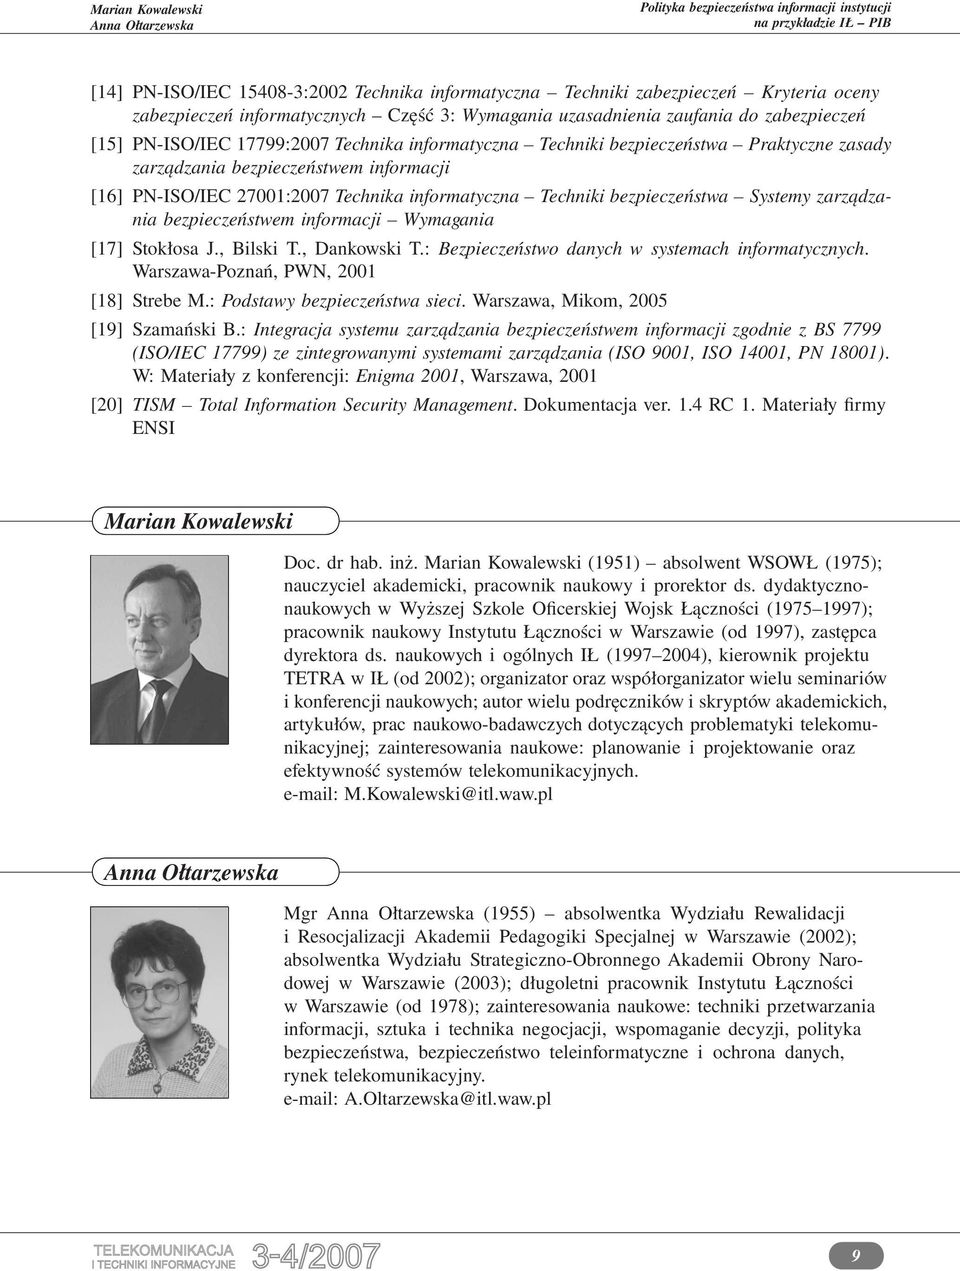 zarządzania bezpieczeństwem informacji Wymagania [17] Stokłosa J., Bilski T., Dankowski T.: Bezpieczeństwo danych w systemach informatycznych. Warszawa-Poznań, PWN, 2001 [18] Strebe M.